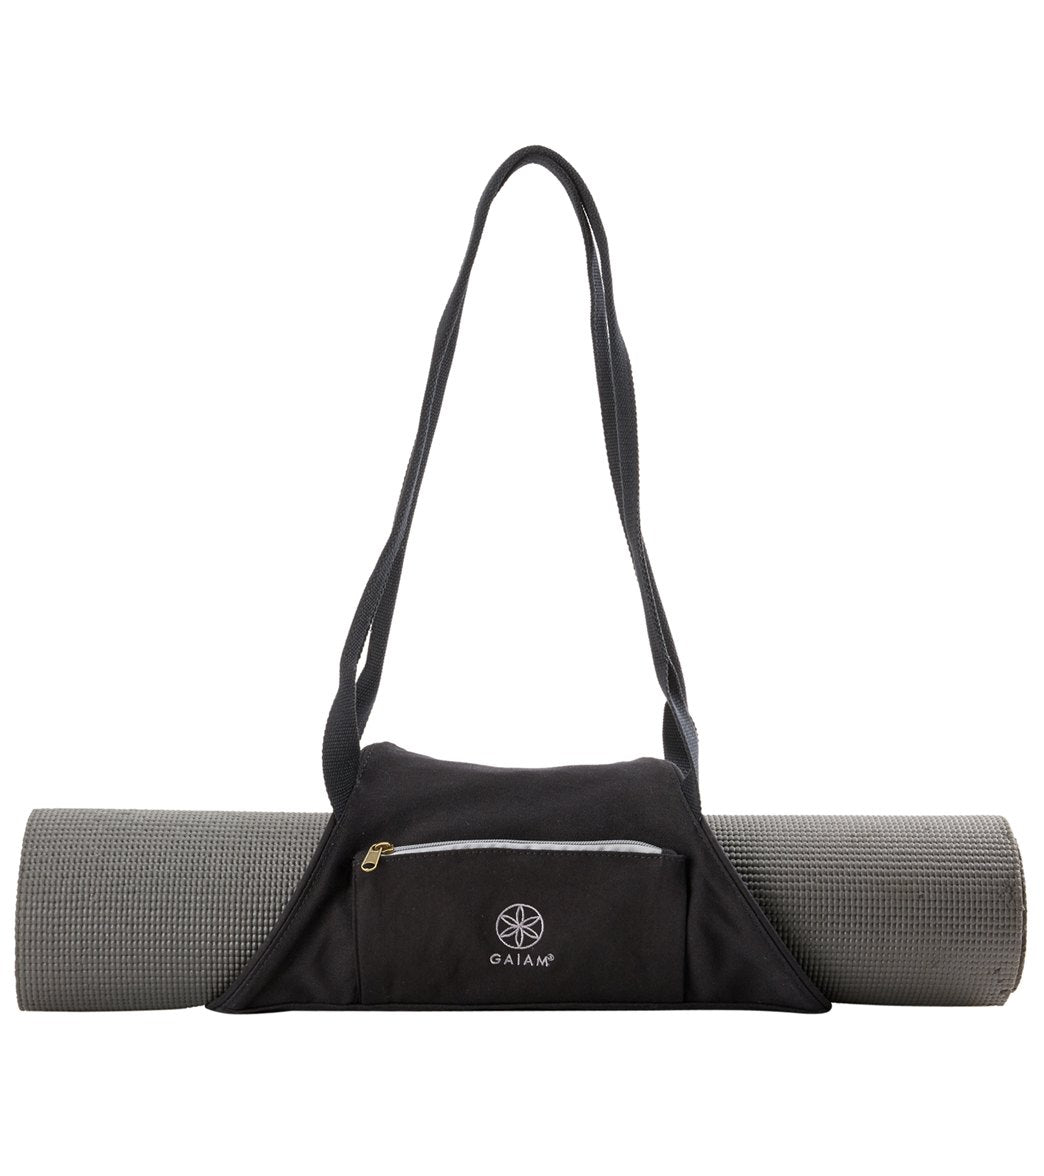 yoga mat sling